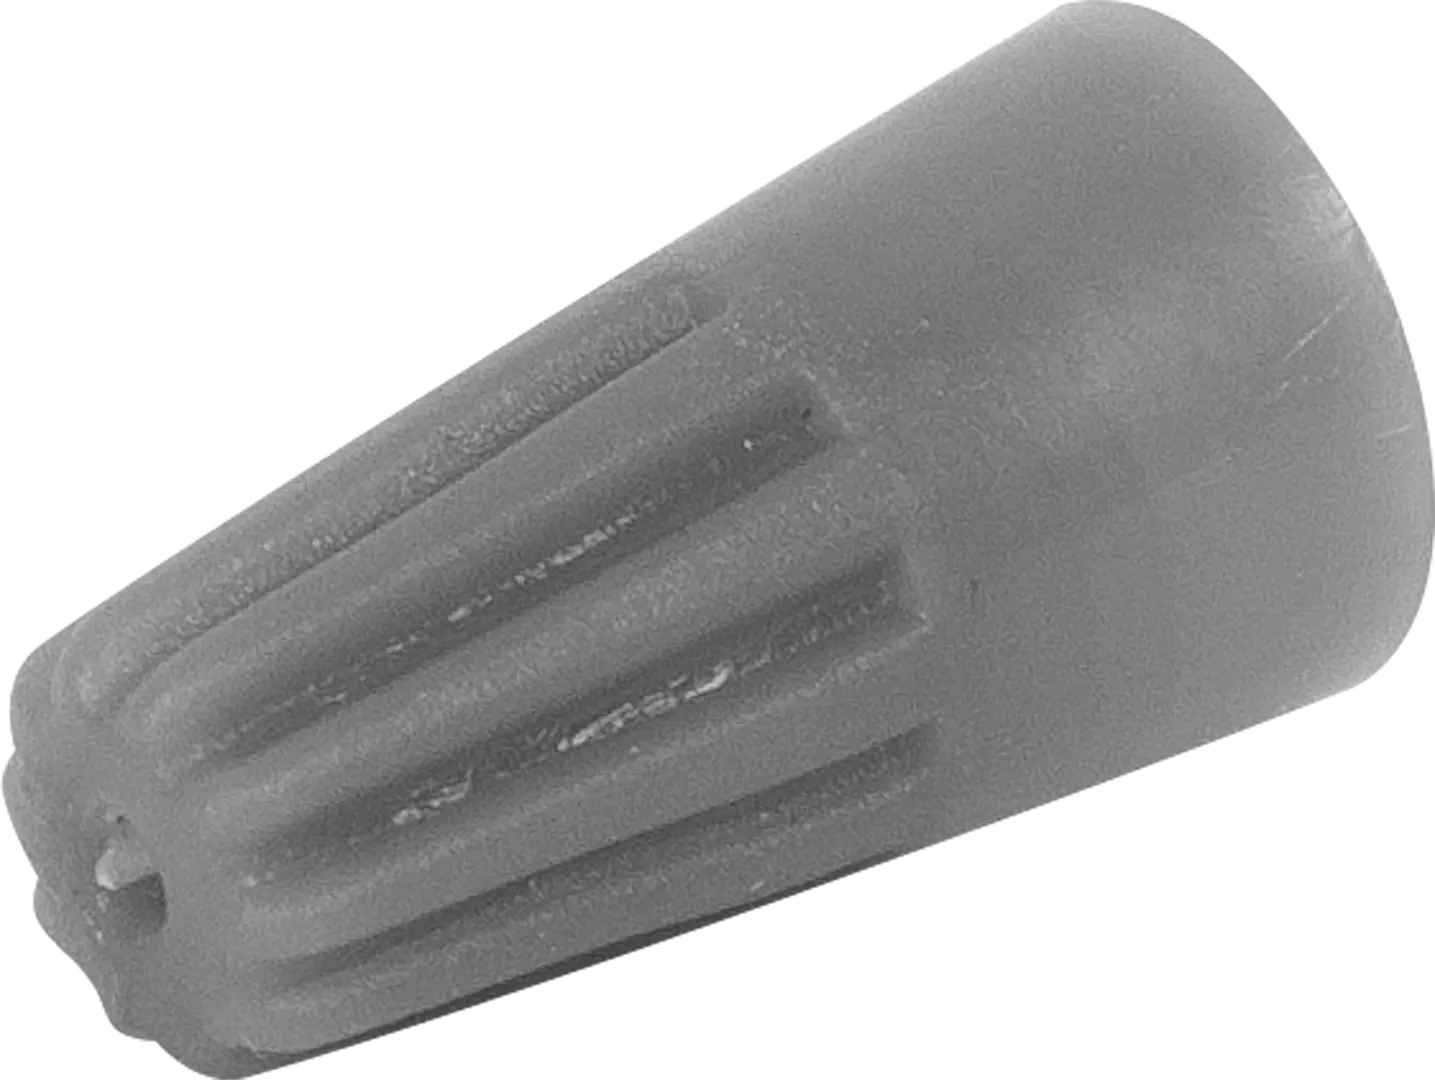 Соединительный изолирующий зажим Duwi СИЗ-1 1-3 мм цвет серый 10 шт. соединительный изолирующий зажим rexant